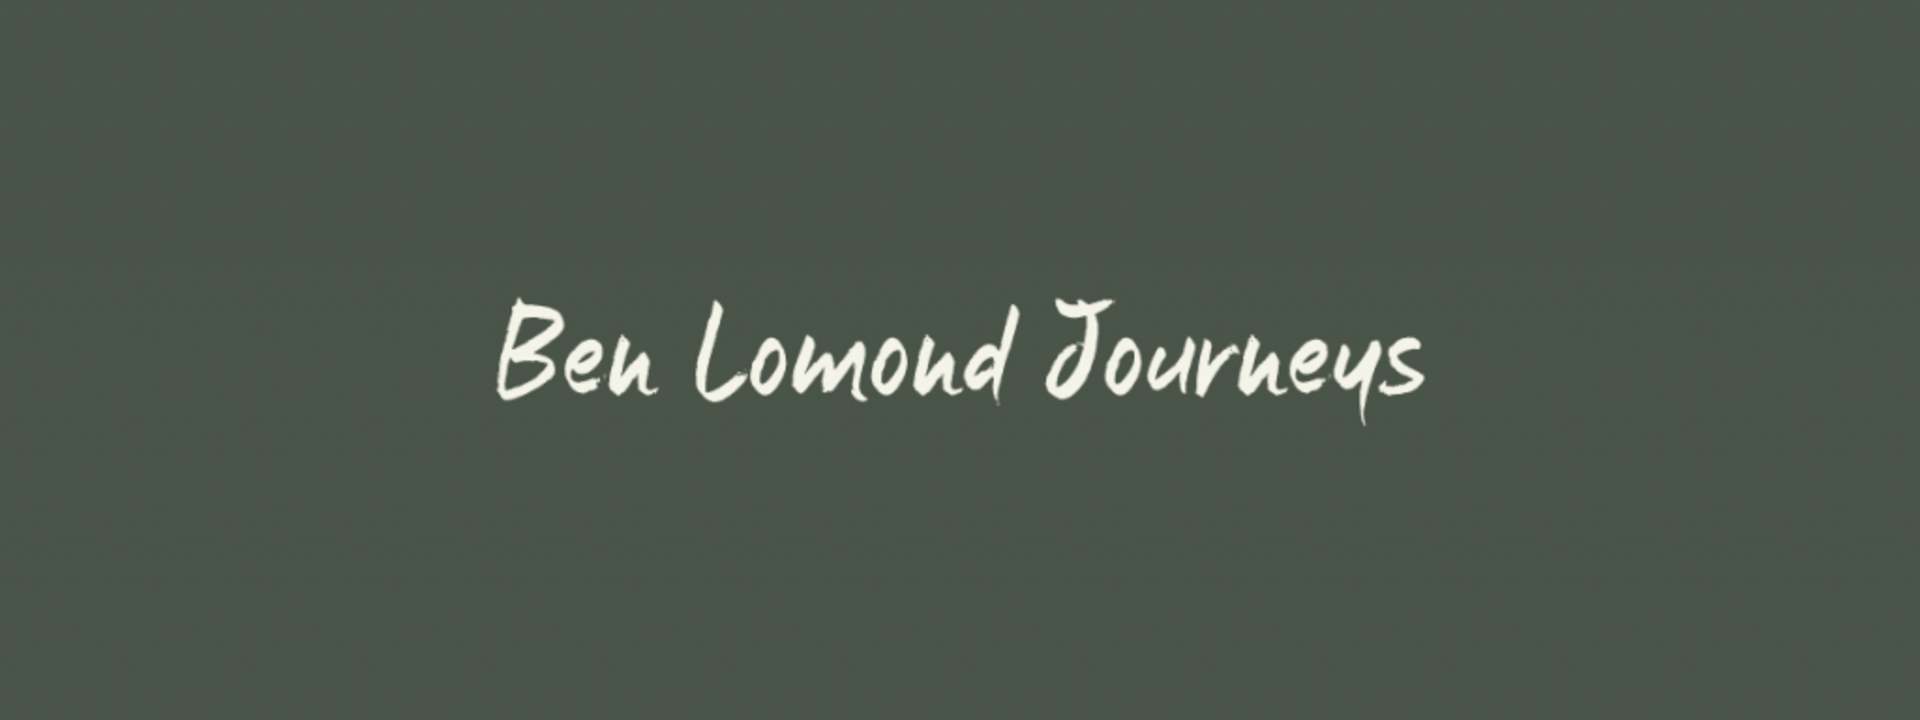 ben-lomond-journeys_social-1024x536.png